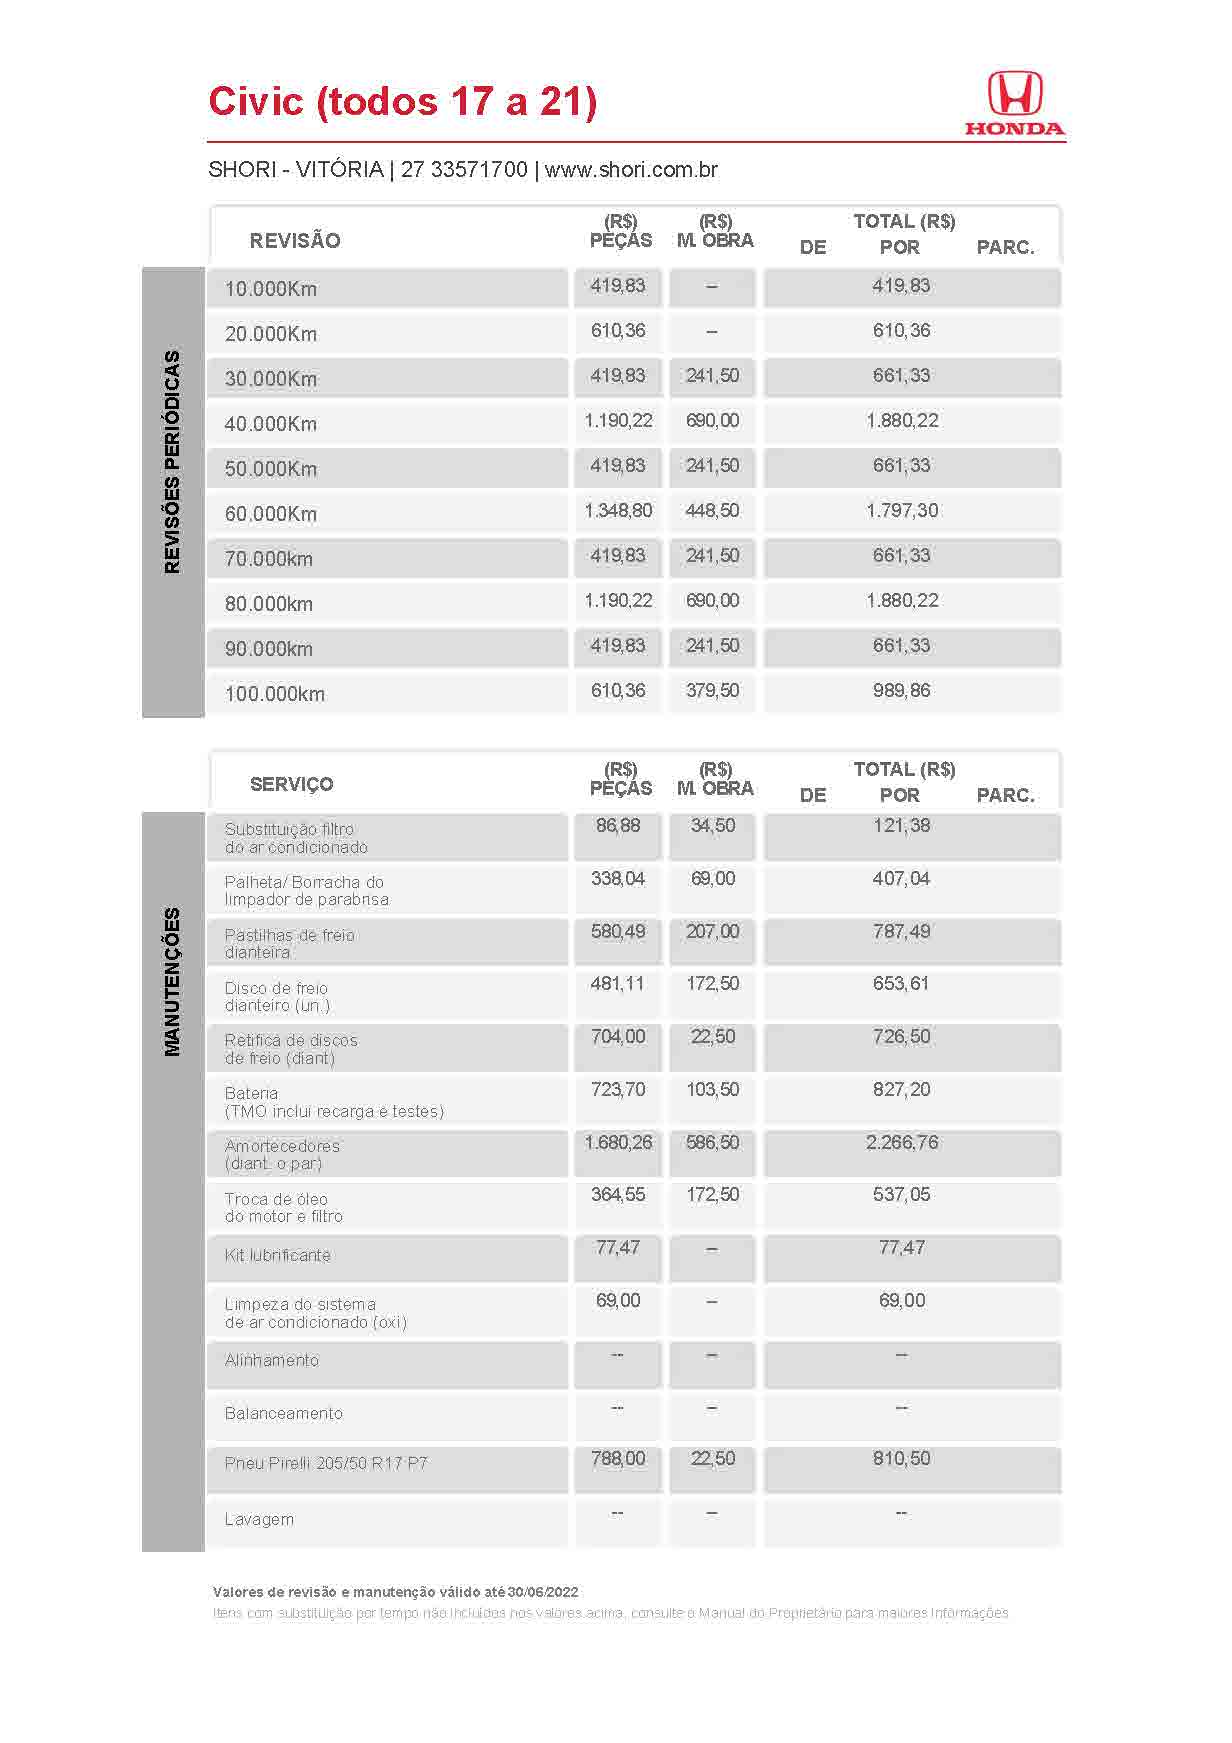 Honda Shori Tabela de Revisão civic todos 17 a 21 2022 06 30